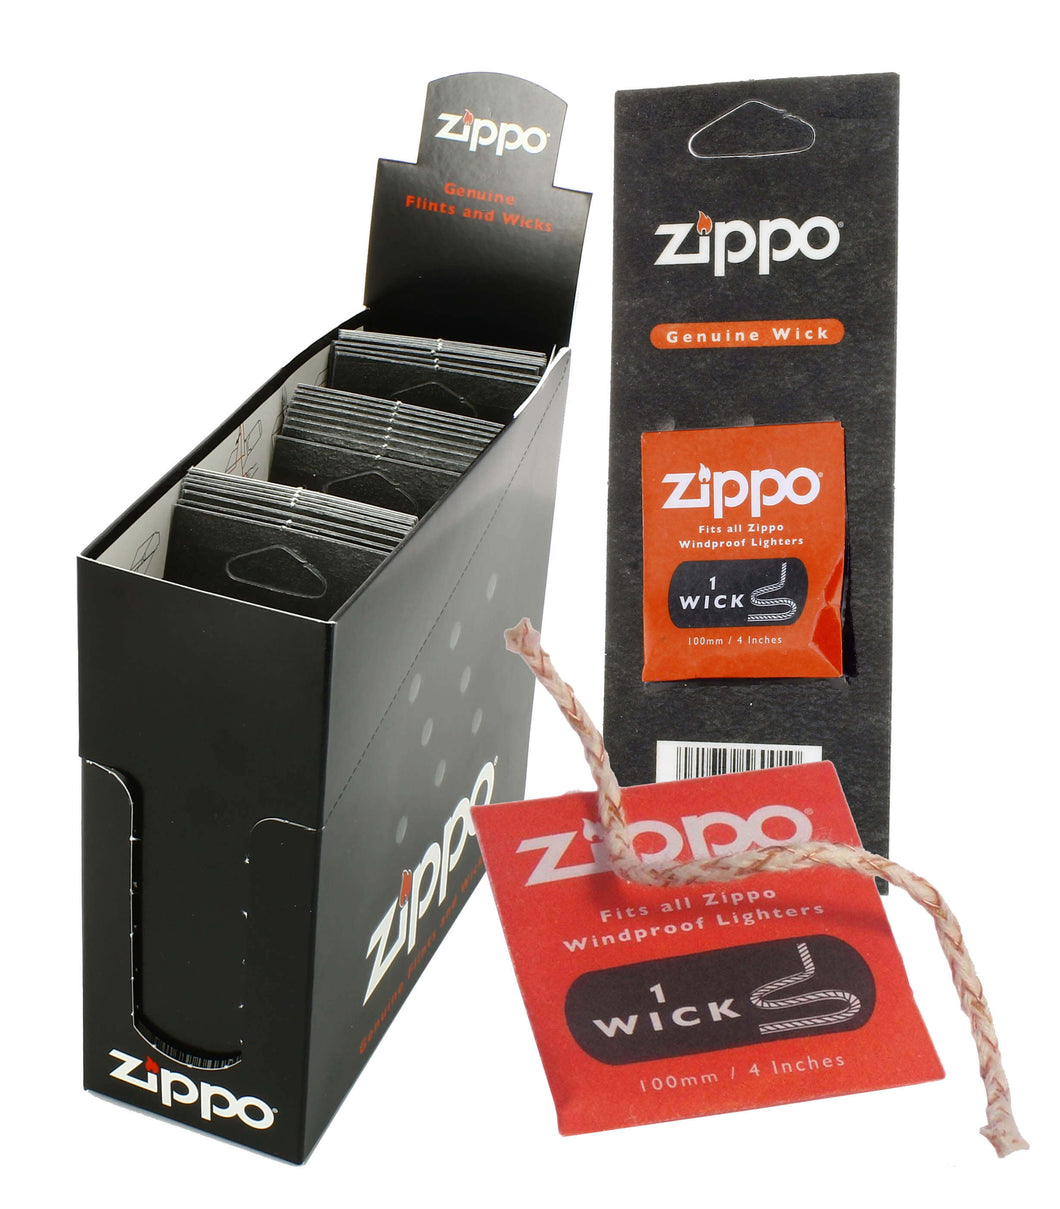 ZIPPO WICKS BLISTERS (X24)